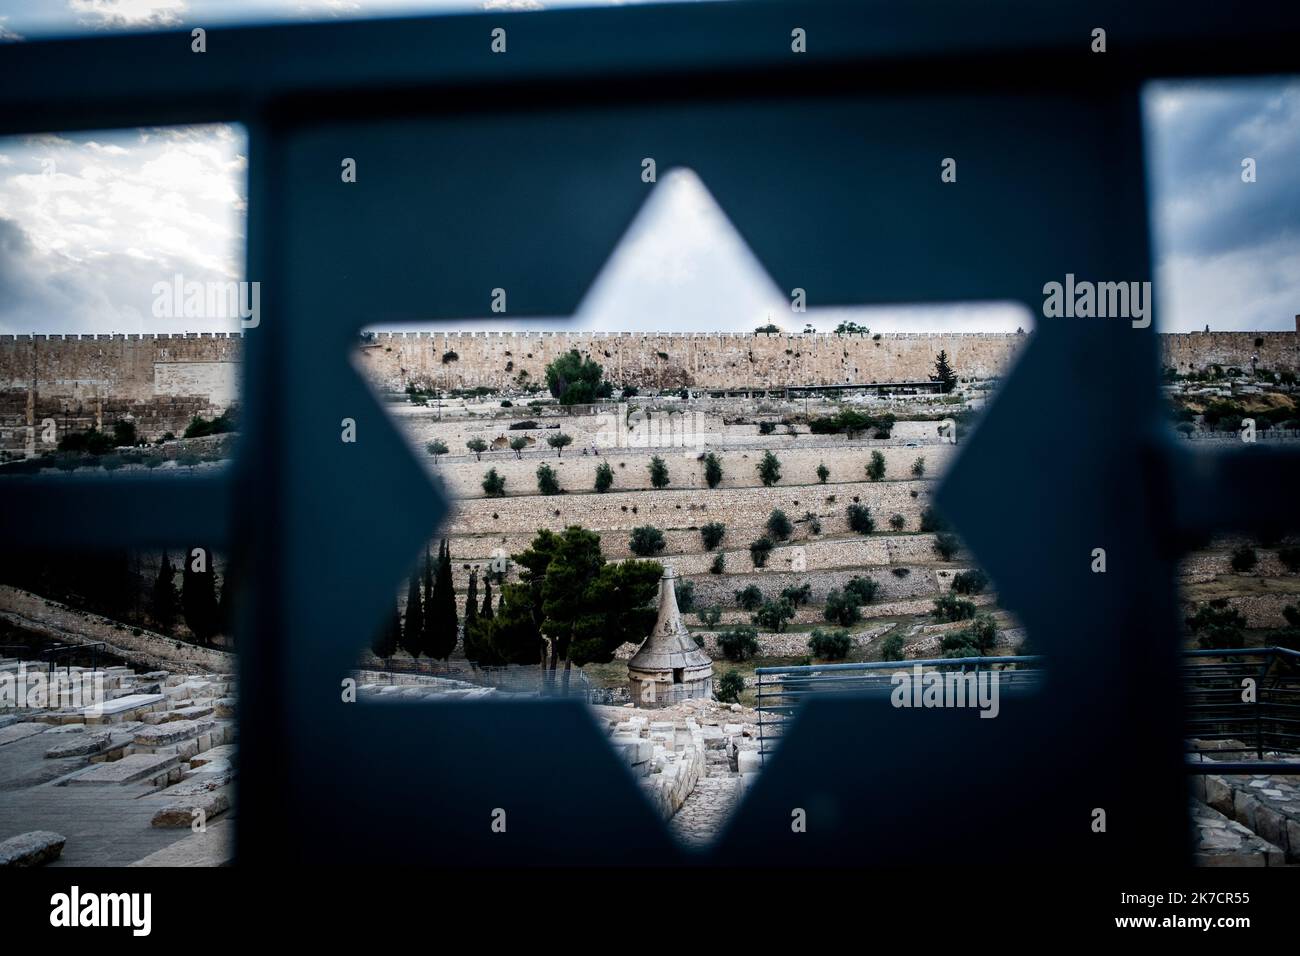 ©Michael Bunel / Le Pictorium/MAXPPP - Michael Bunel / Le Pictorium - 09/05/2018 - Israel / Jerusalem / Jerusalem - Vue sur la mosquee al-Aqsa (Al-aksa) et le Dome du rocher ainsi que sur le cimetierre Juif depuis le mont des Oliviers. 9 mai 2018. Jerusalem. Israel. Palestine. / 09/05/2018 - Israel / Jerusalem / Jerusalem - View of al-Aqsa Mosque (Al-aksa) and the Dome of the Rock from the Mount of Olives. May 9, 2018. Jerusalem. Israel. Palestine. Stock Photo